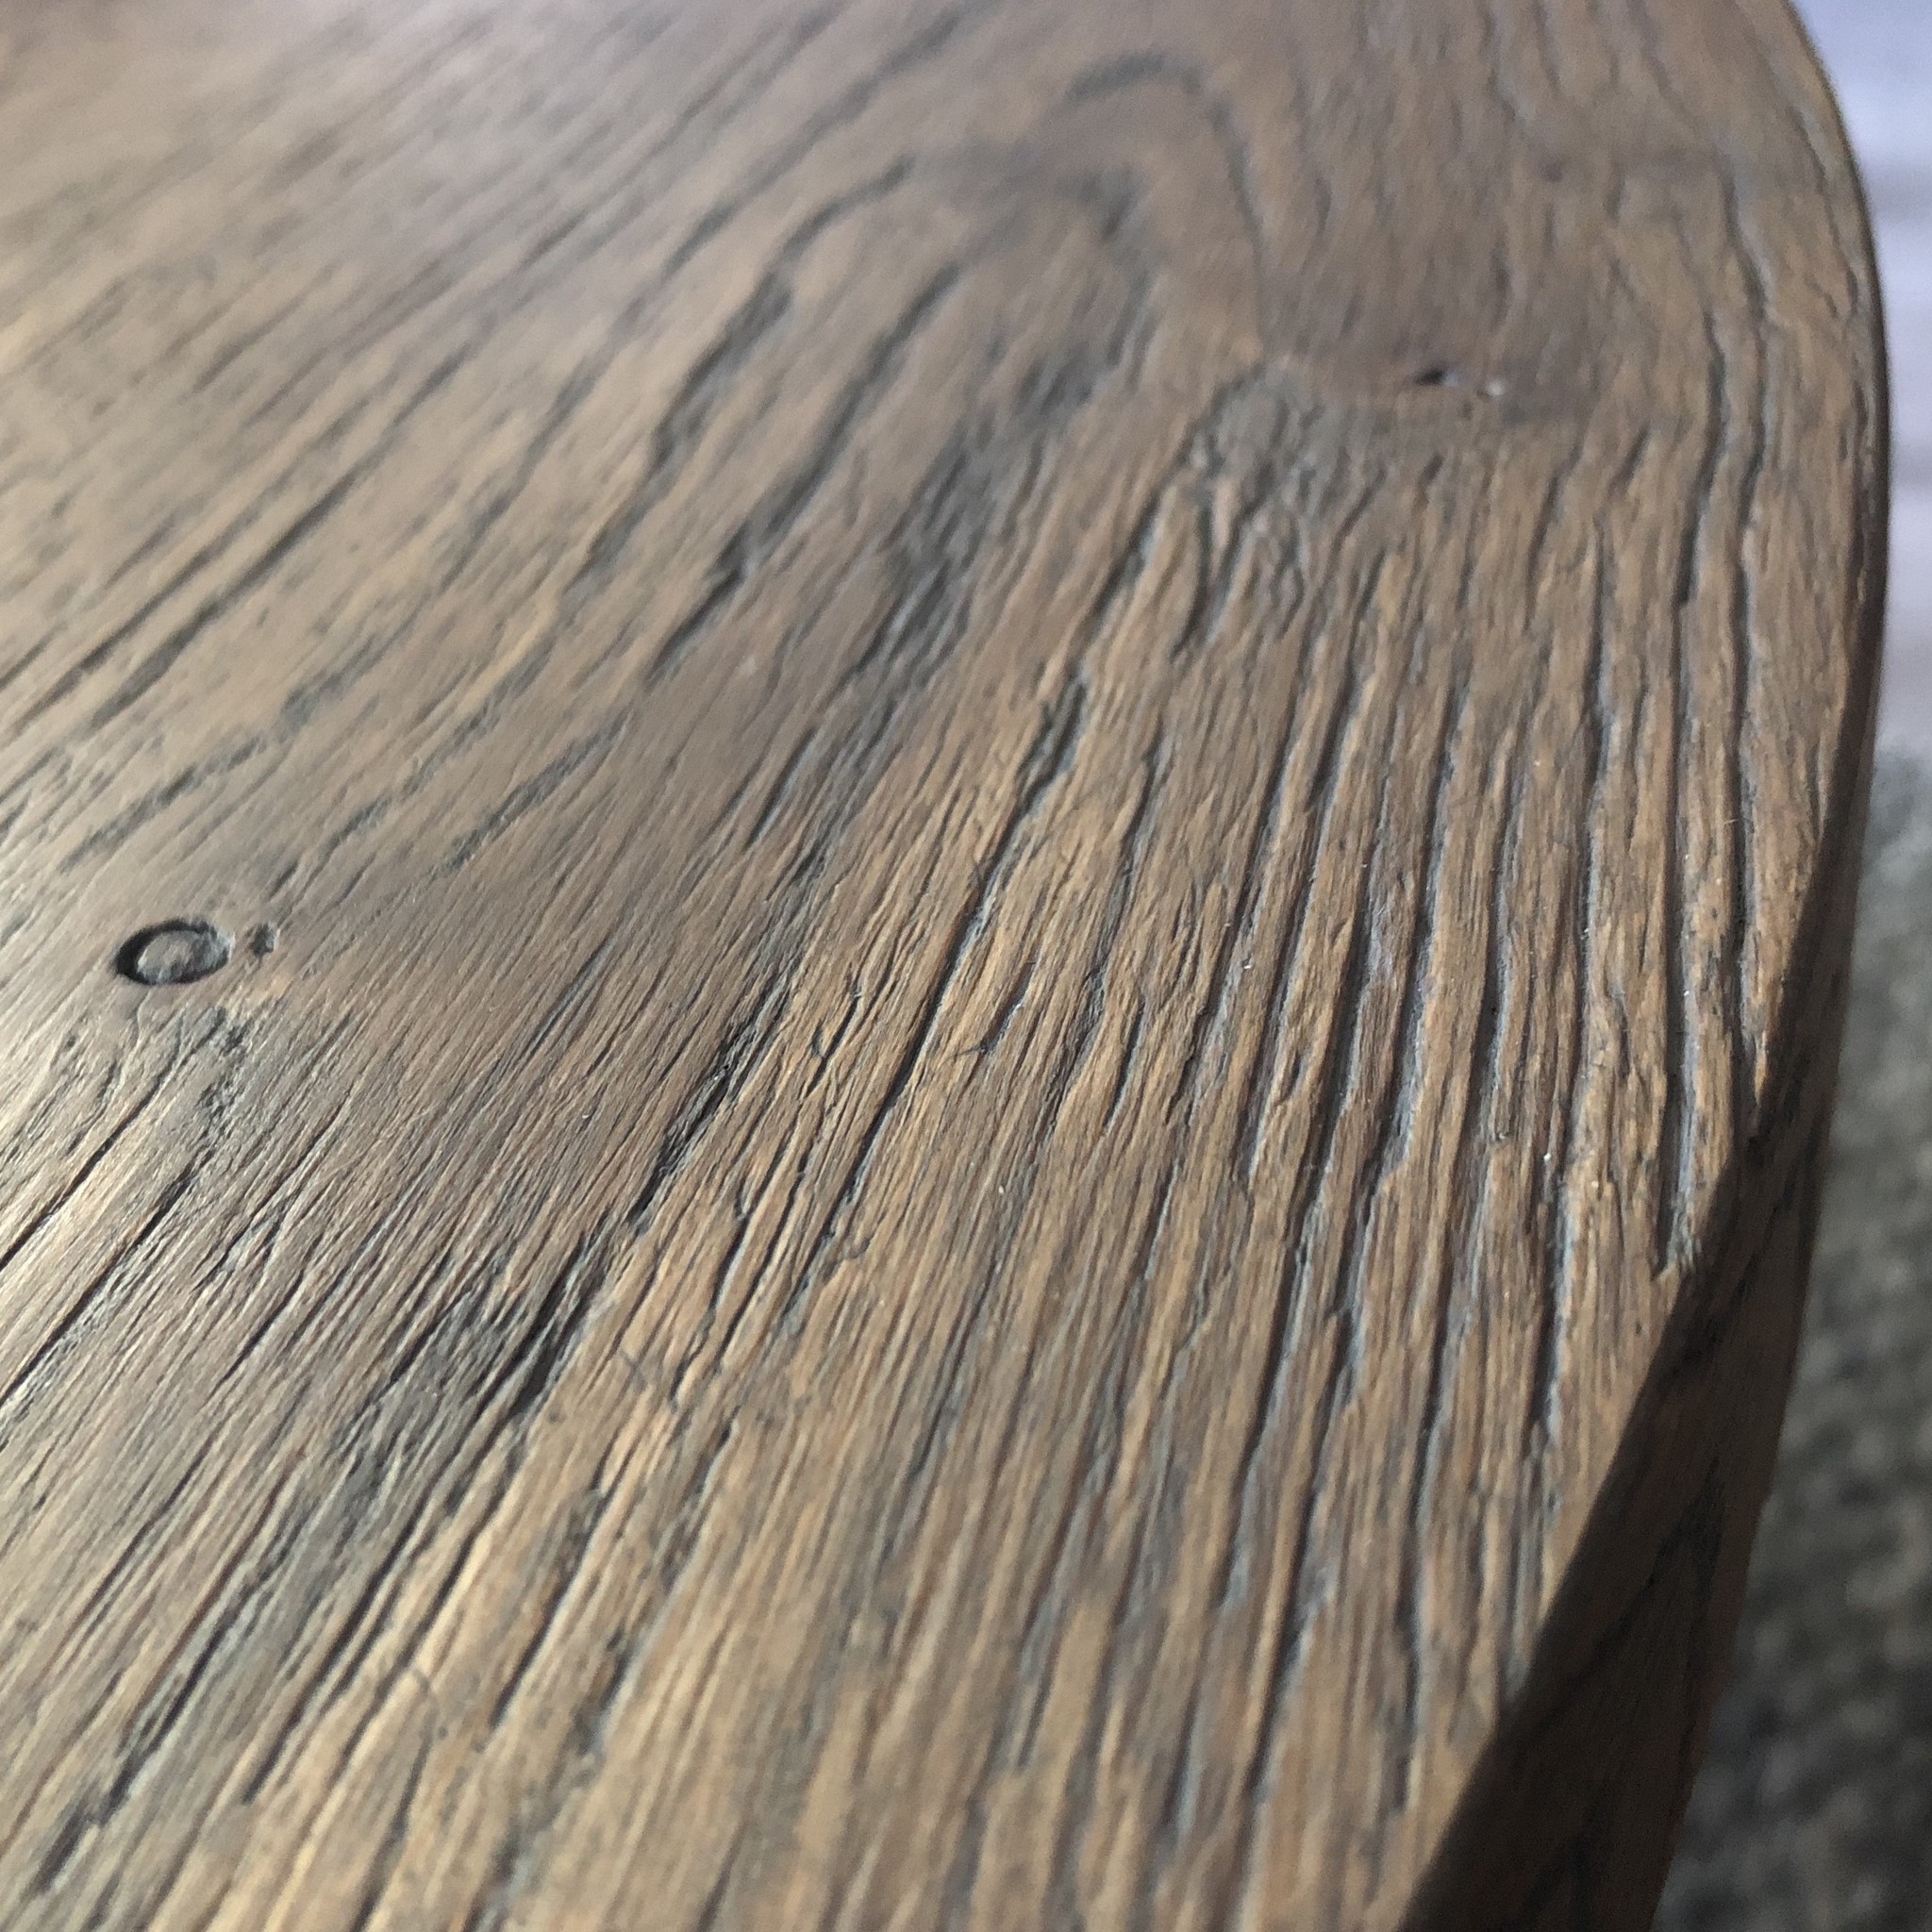  Tischplatte (Bistro) Wildeiche rund - 4 cm dick - Asteiche (rustikal) - Eiche Tischplatte rund massiv - Verleimt & künstlich getrocknet (HF 8-12%)